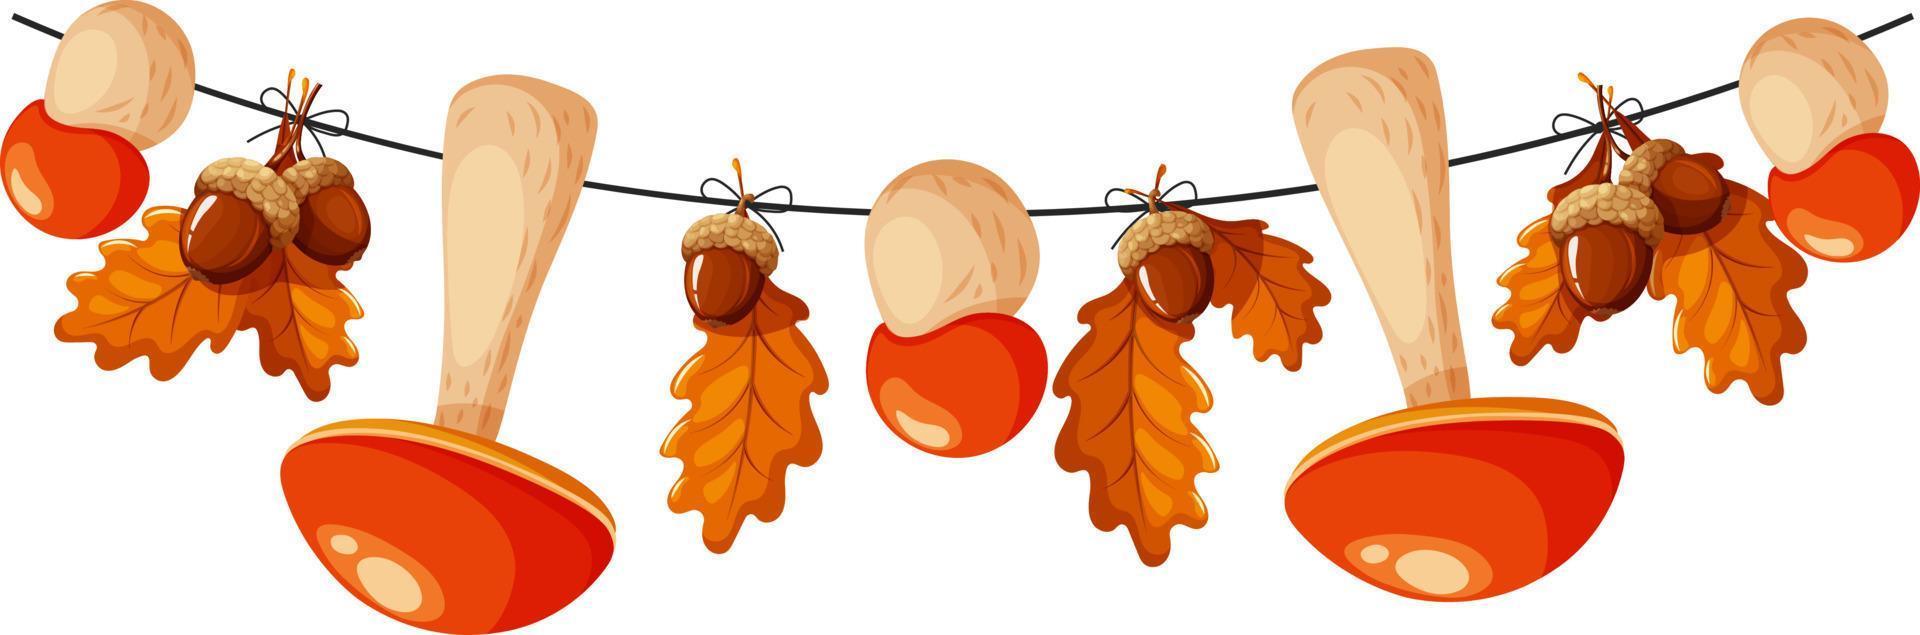 setas de álamo en una cuerda, guirnalda con setas y bellotas, guirnalda de otoño vector